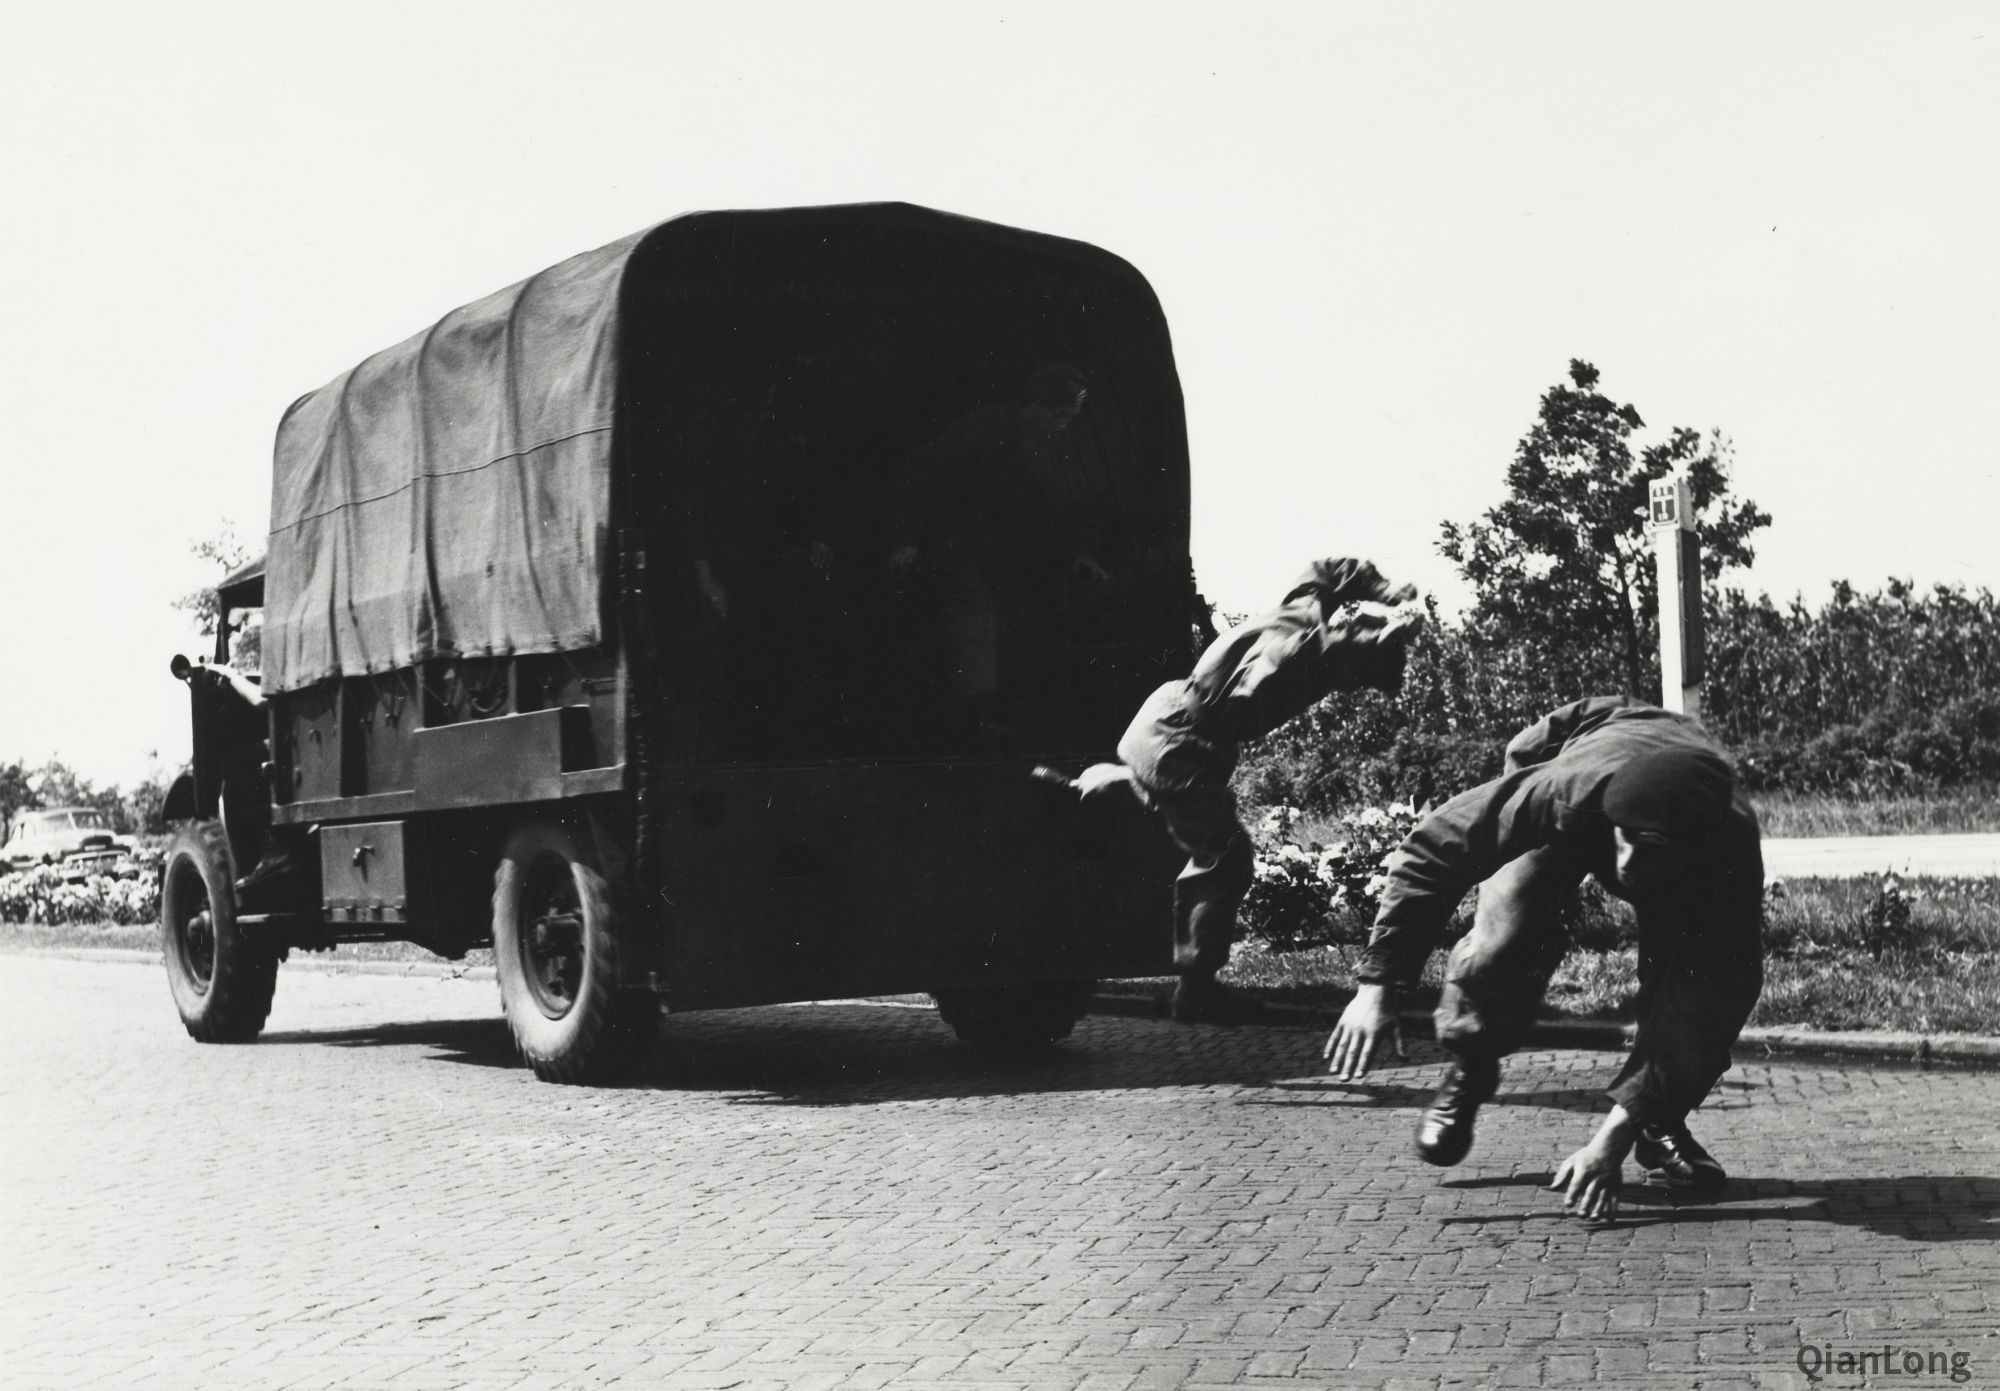 02.正在进行跳车演示的荷兰皇家陆军突击队队员。